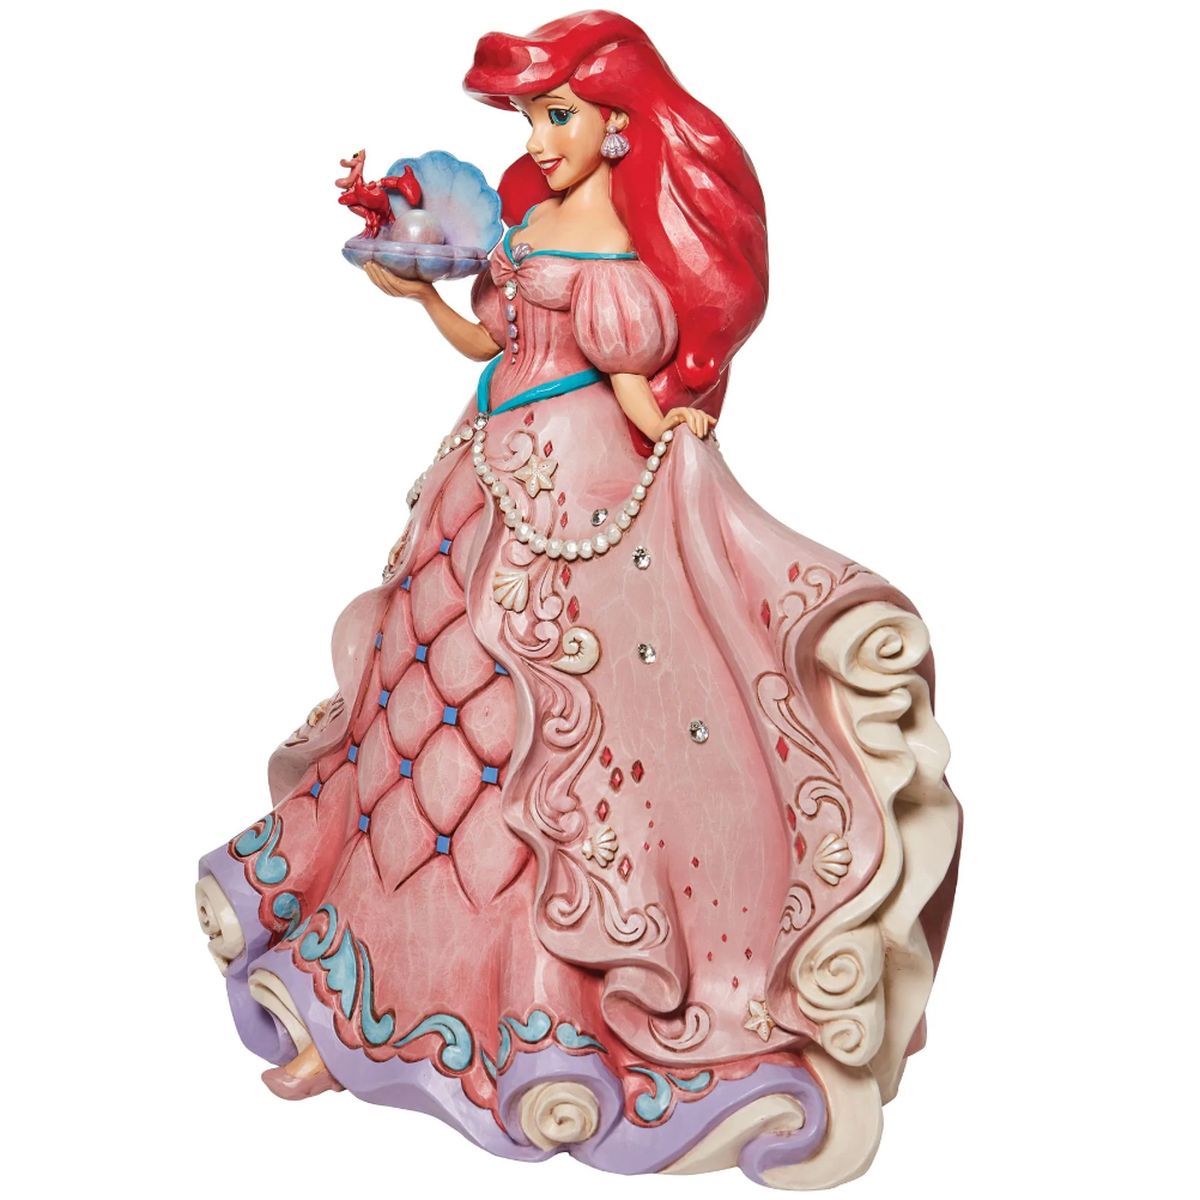 A Precious Pearl - Ariel Deluxe Figurine - 38 cm